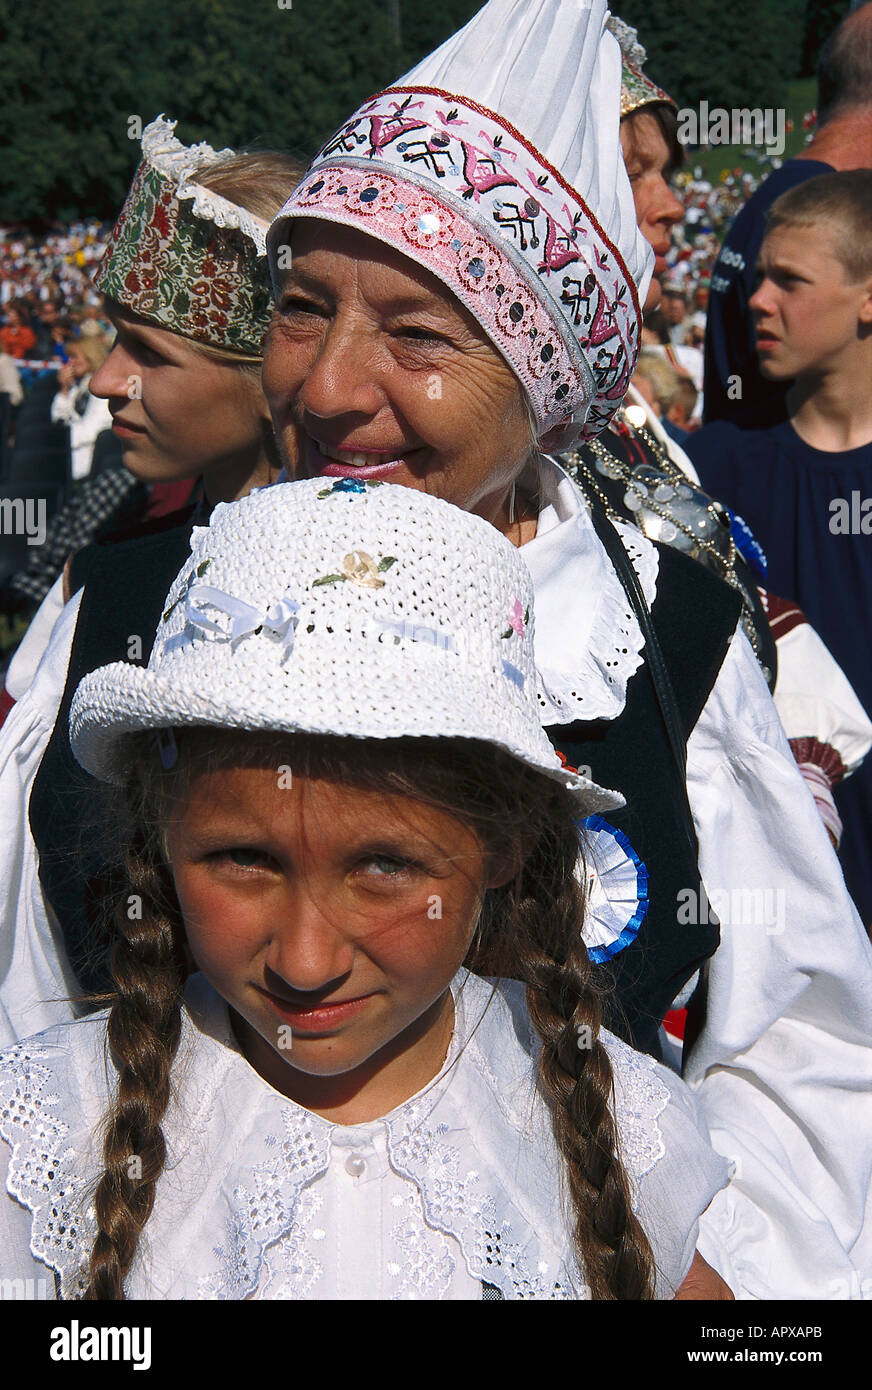 Les gens en costumes traditionnels, concours de chant, Allemagne Banque D'Images